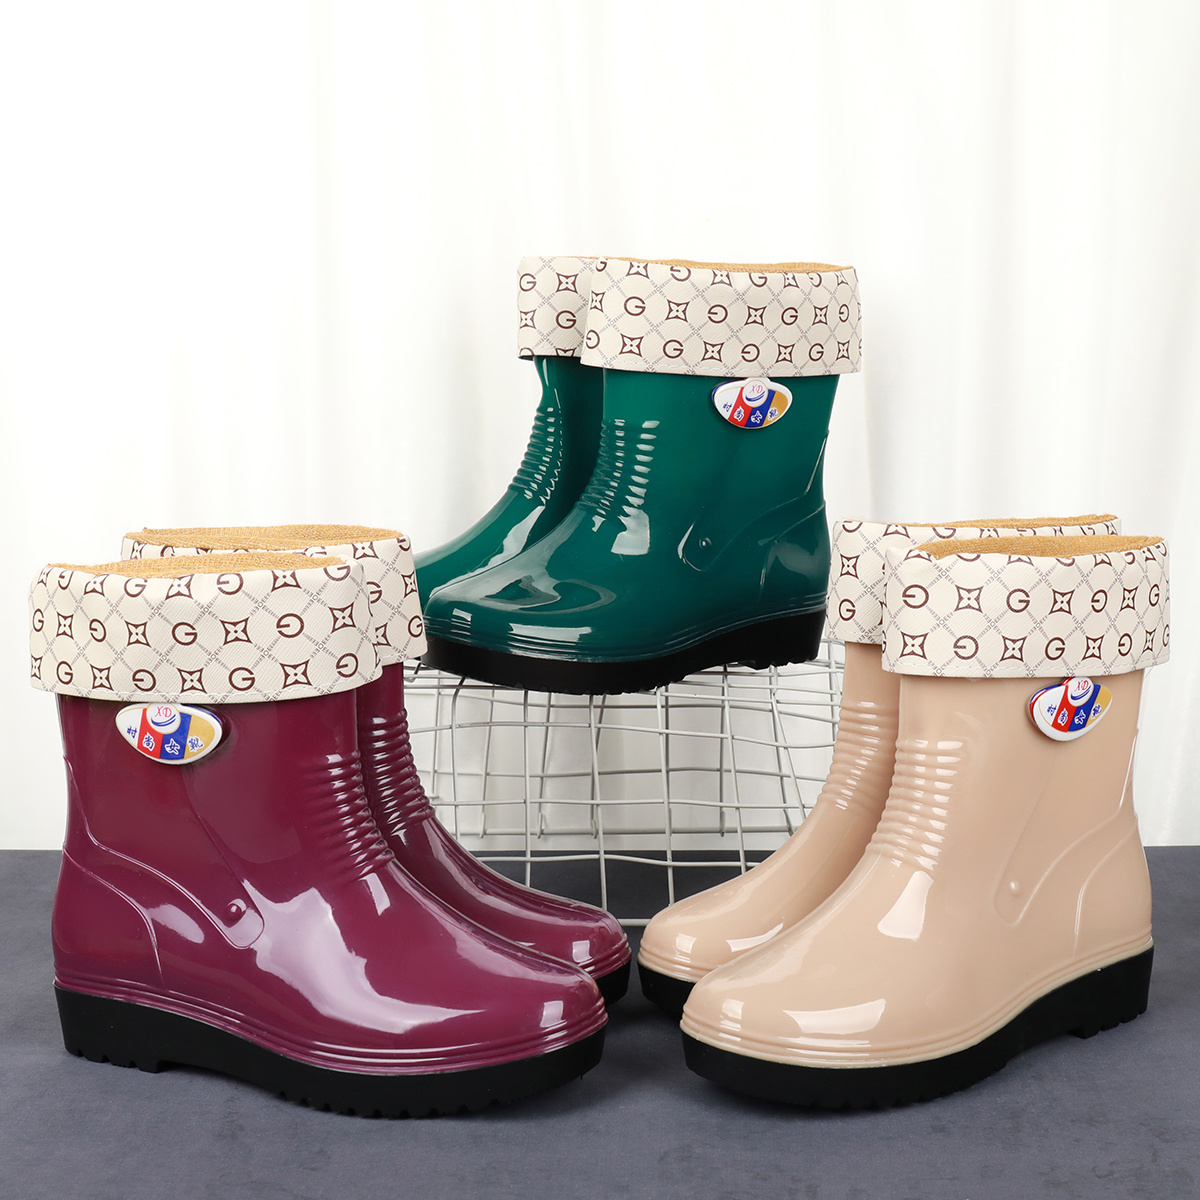 新款雨鞋女外穿防滑雨靴时尚中筒可爱水鞋秋冬保暖加绒短筒雨鞋女